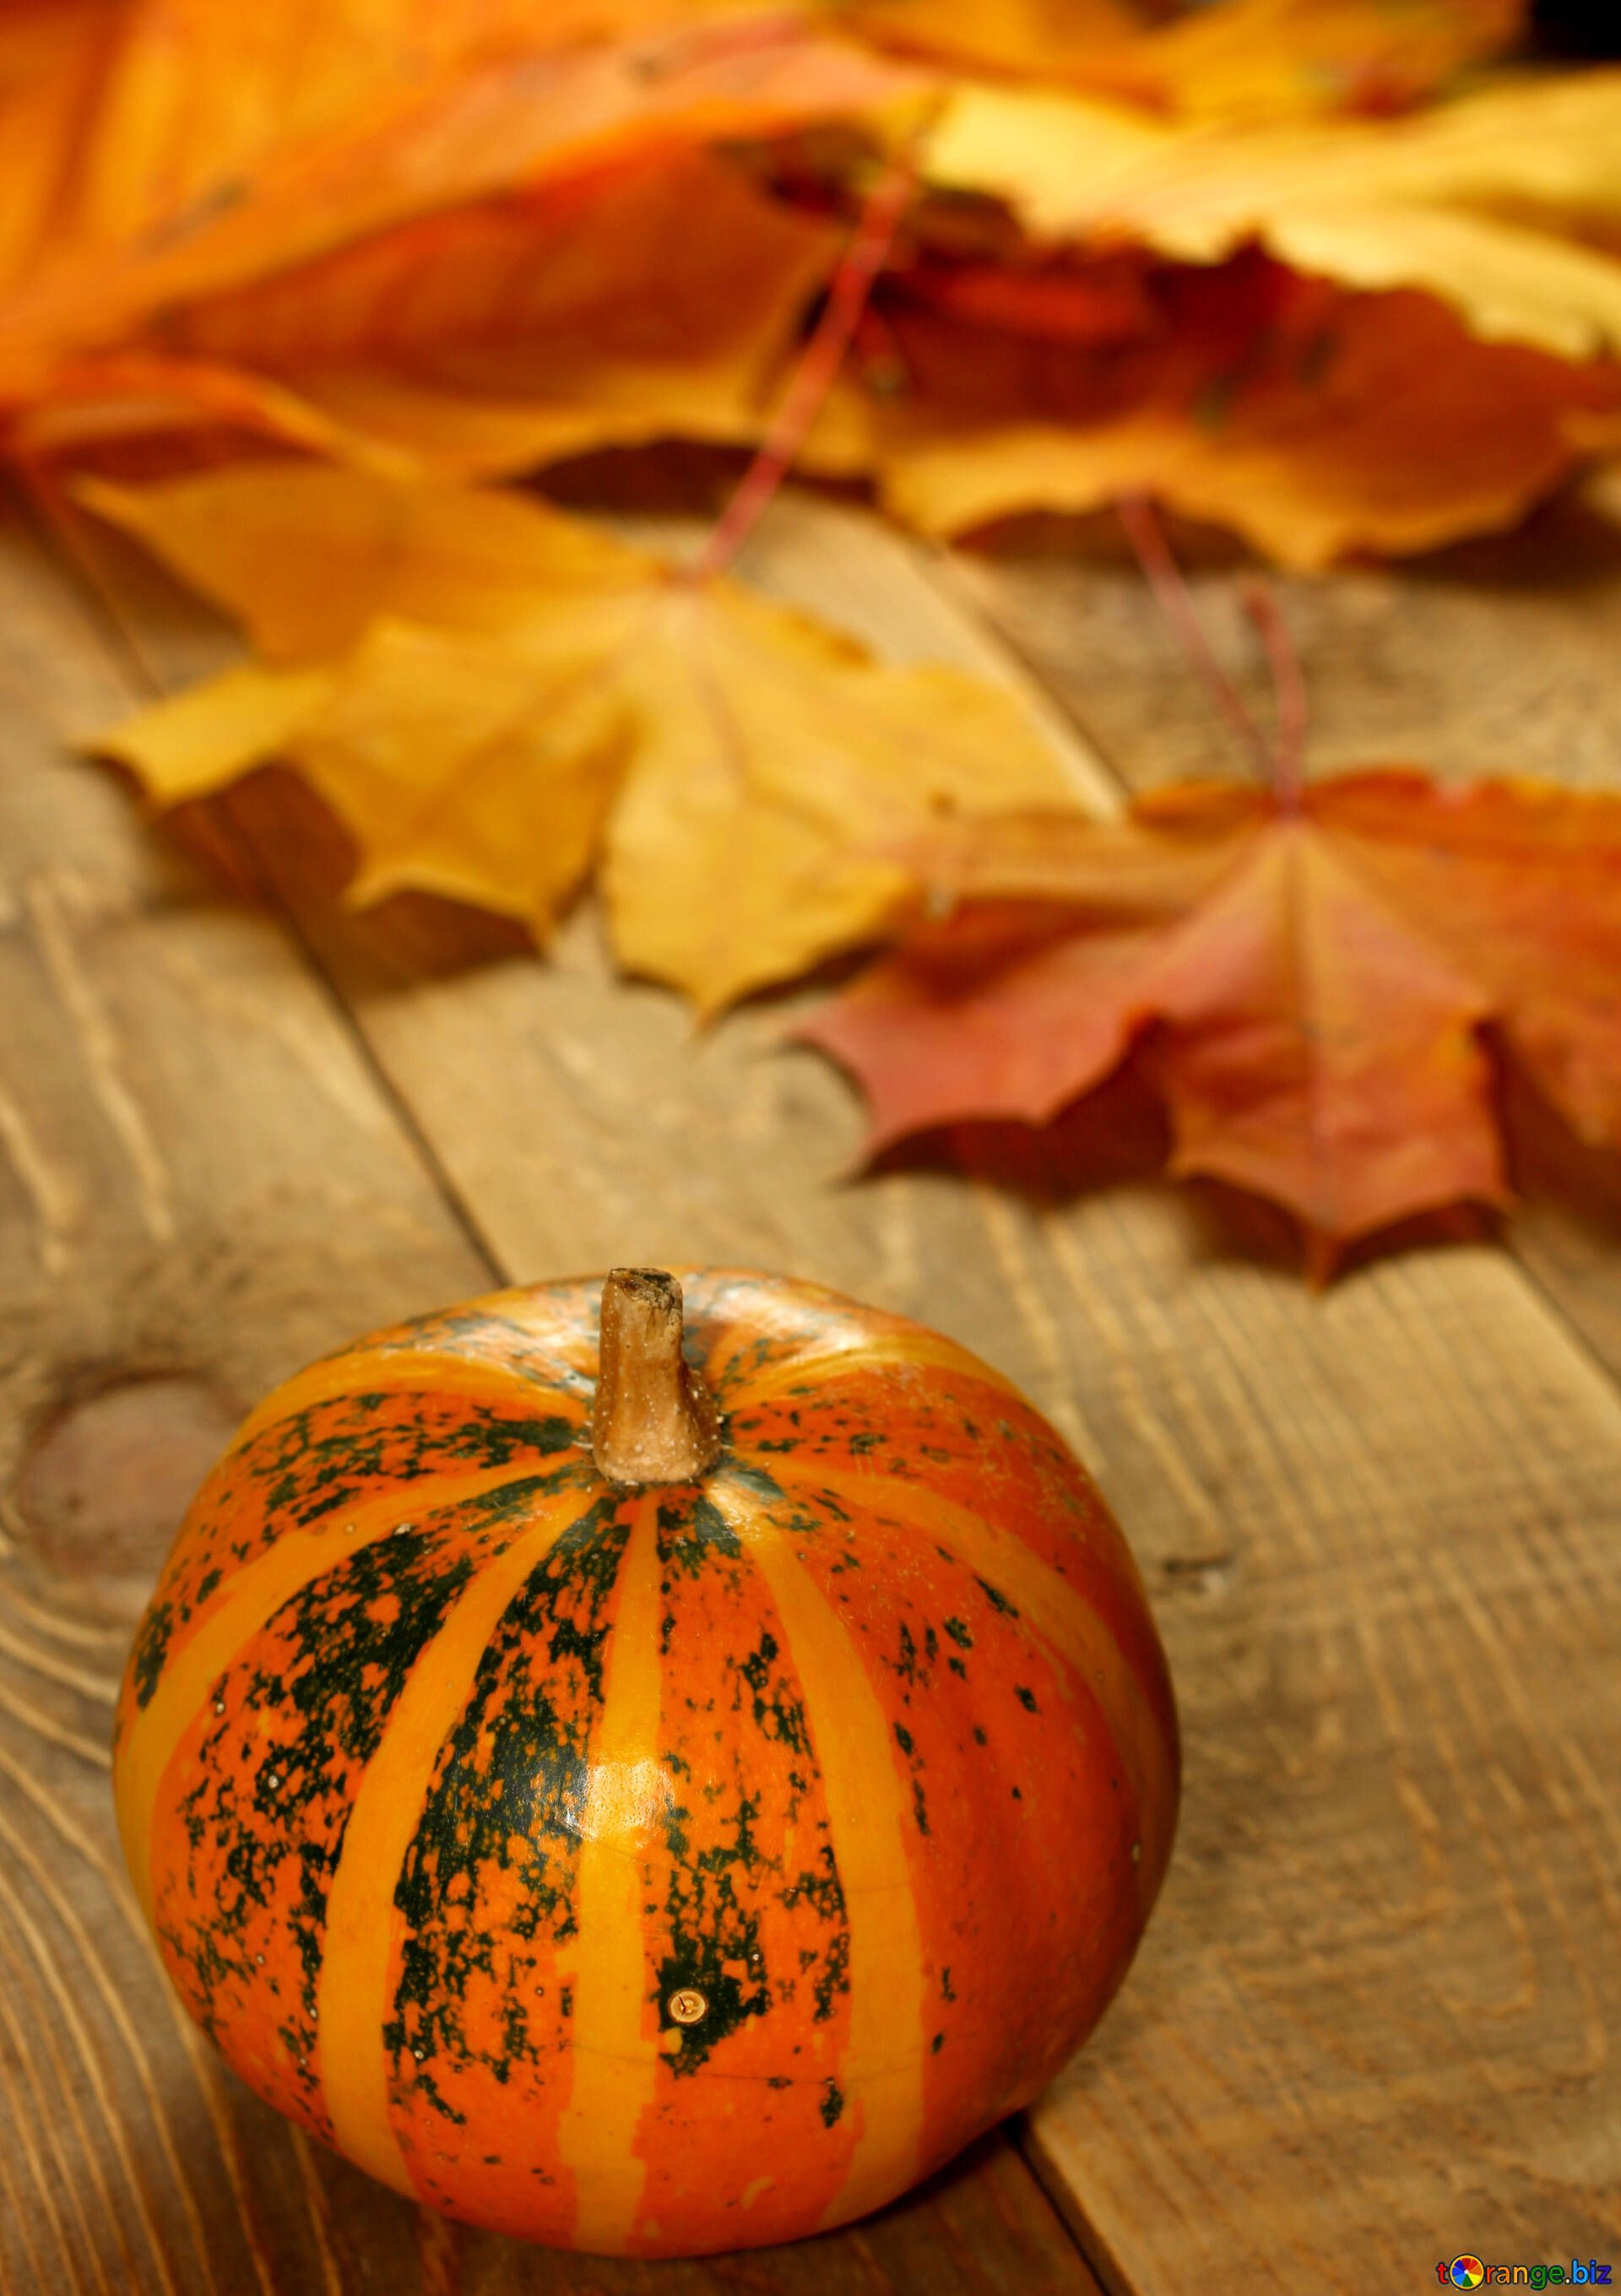 Autumn pumpkin picture with pumpkins for vertical desktop pumpkin № 35200